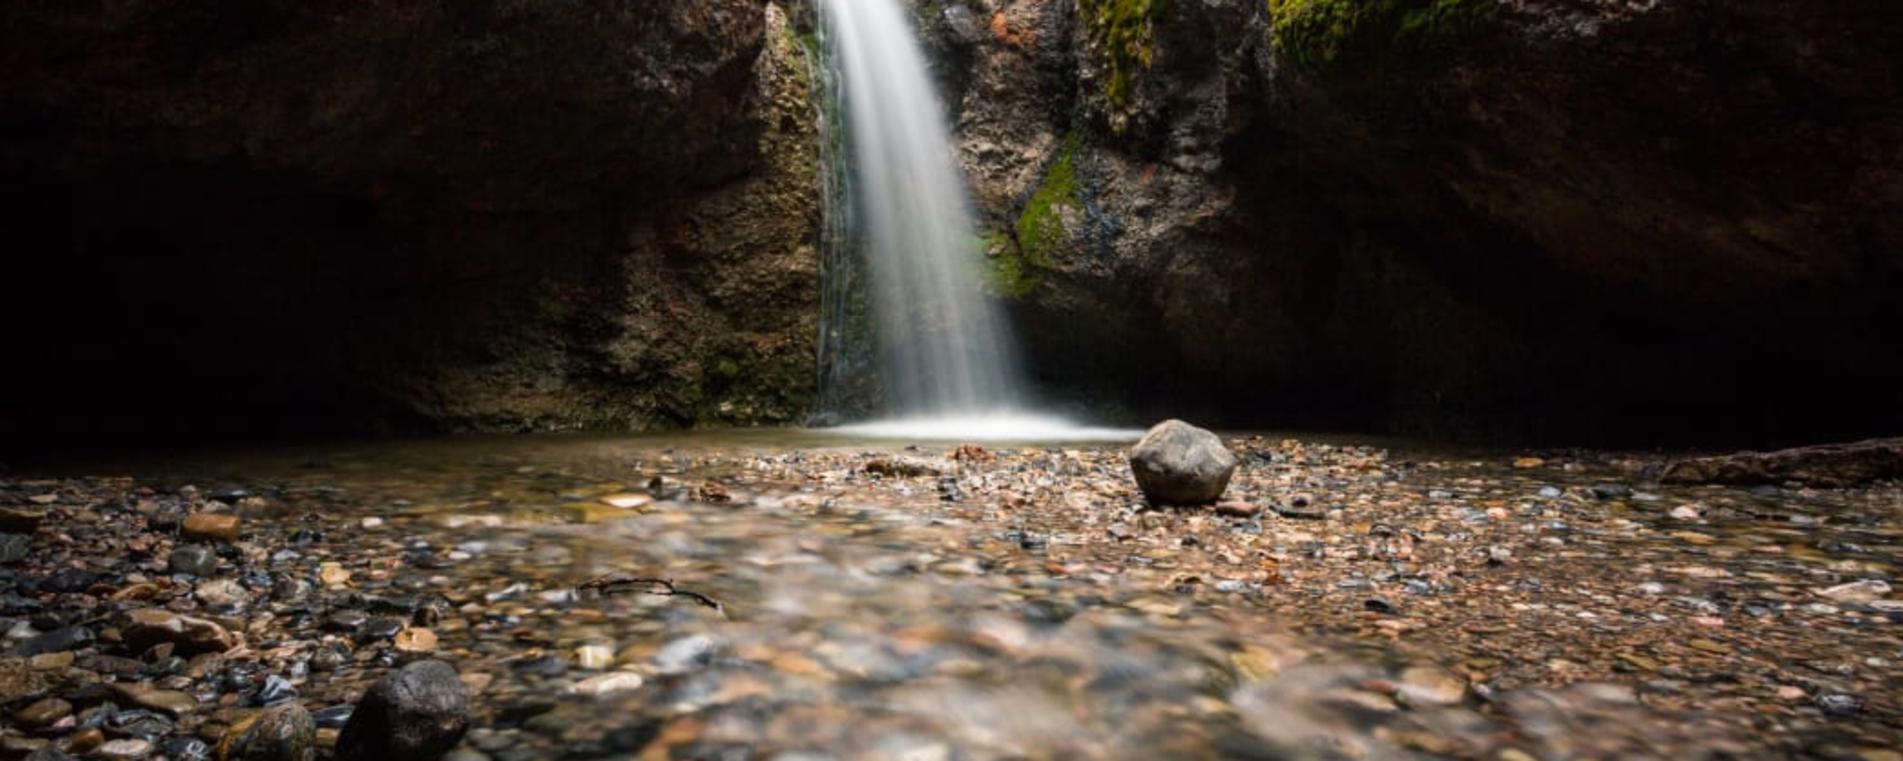 Chasing Waterfalls In Utah Valley Explore Utah Valley